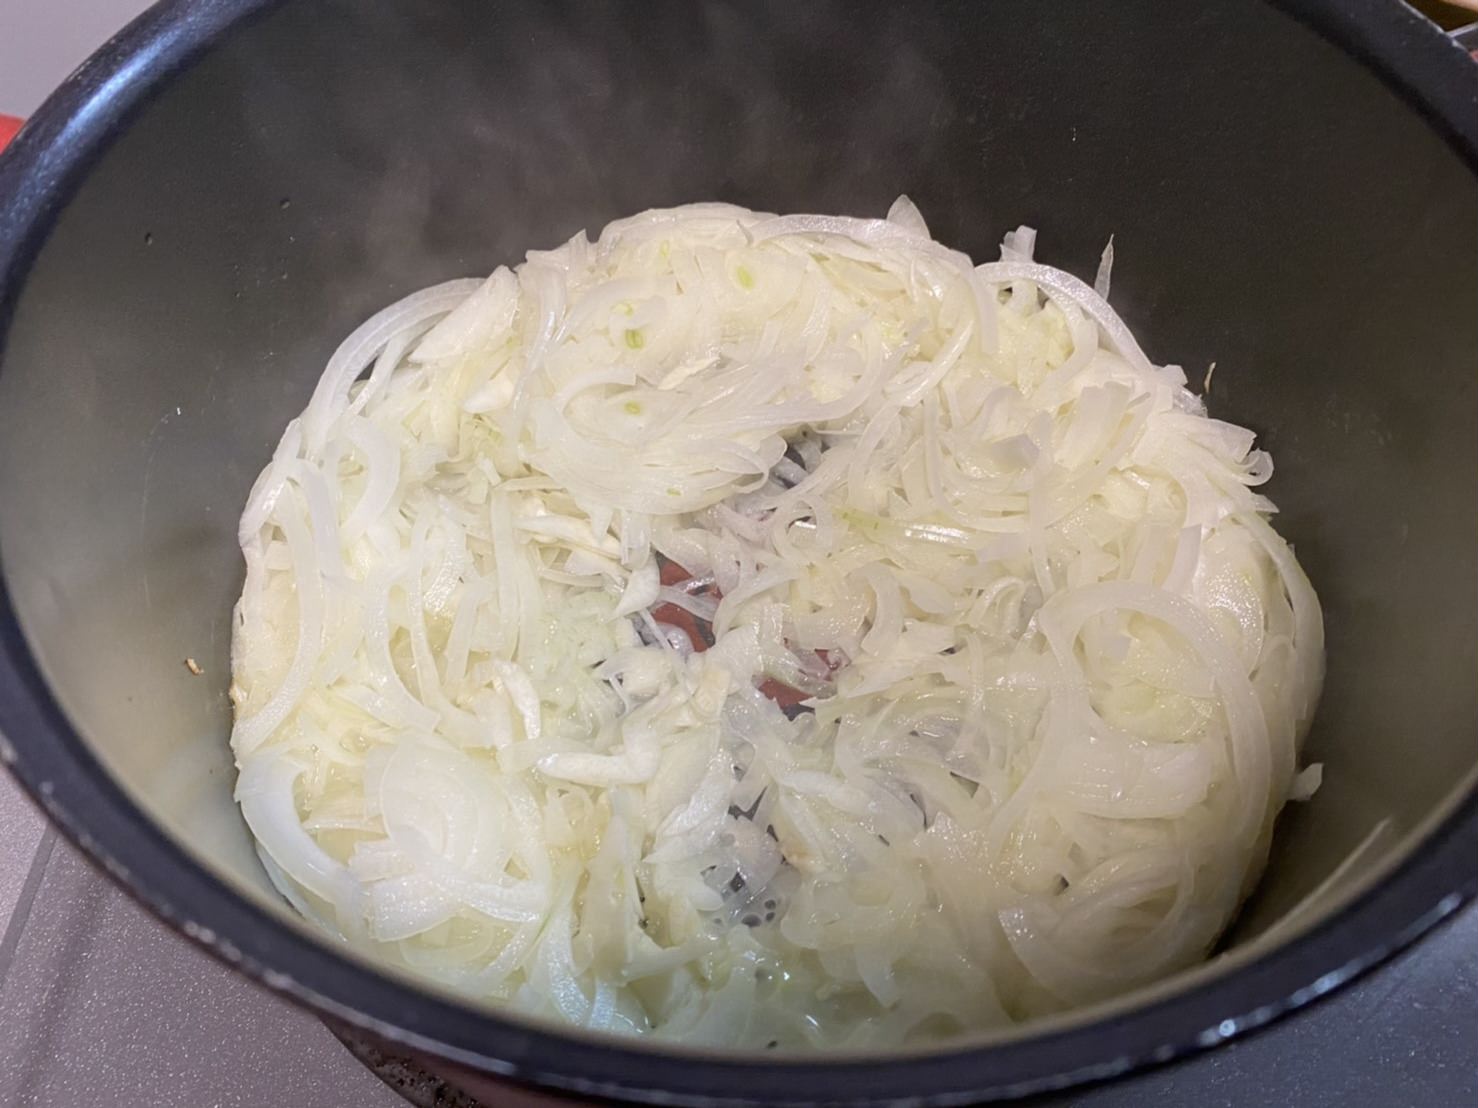 バターが溶けてよく混ぜた様子の鍋の中の様子の画像です